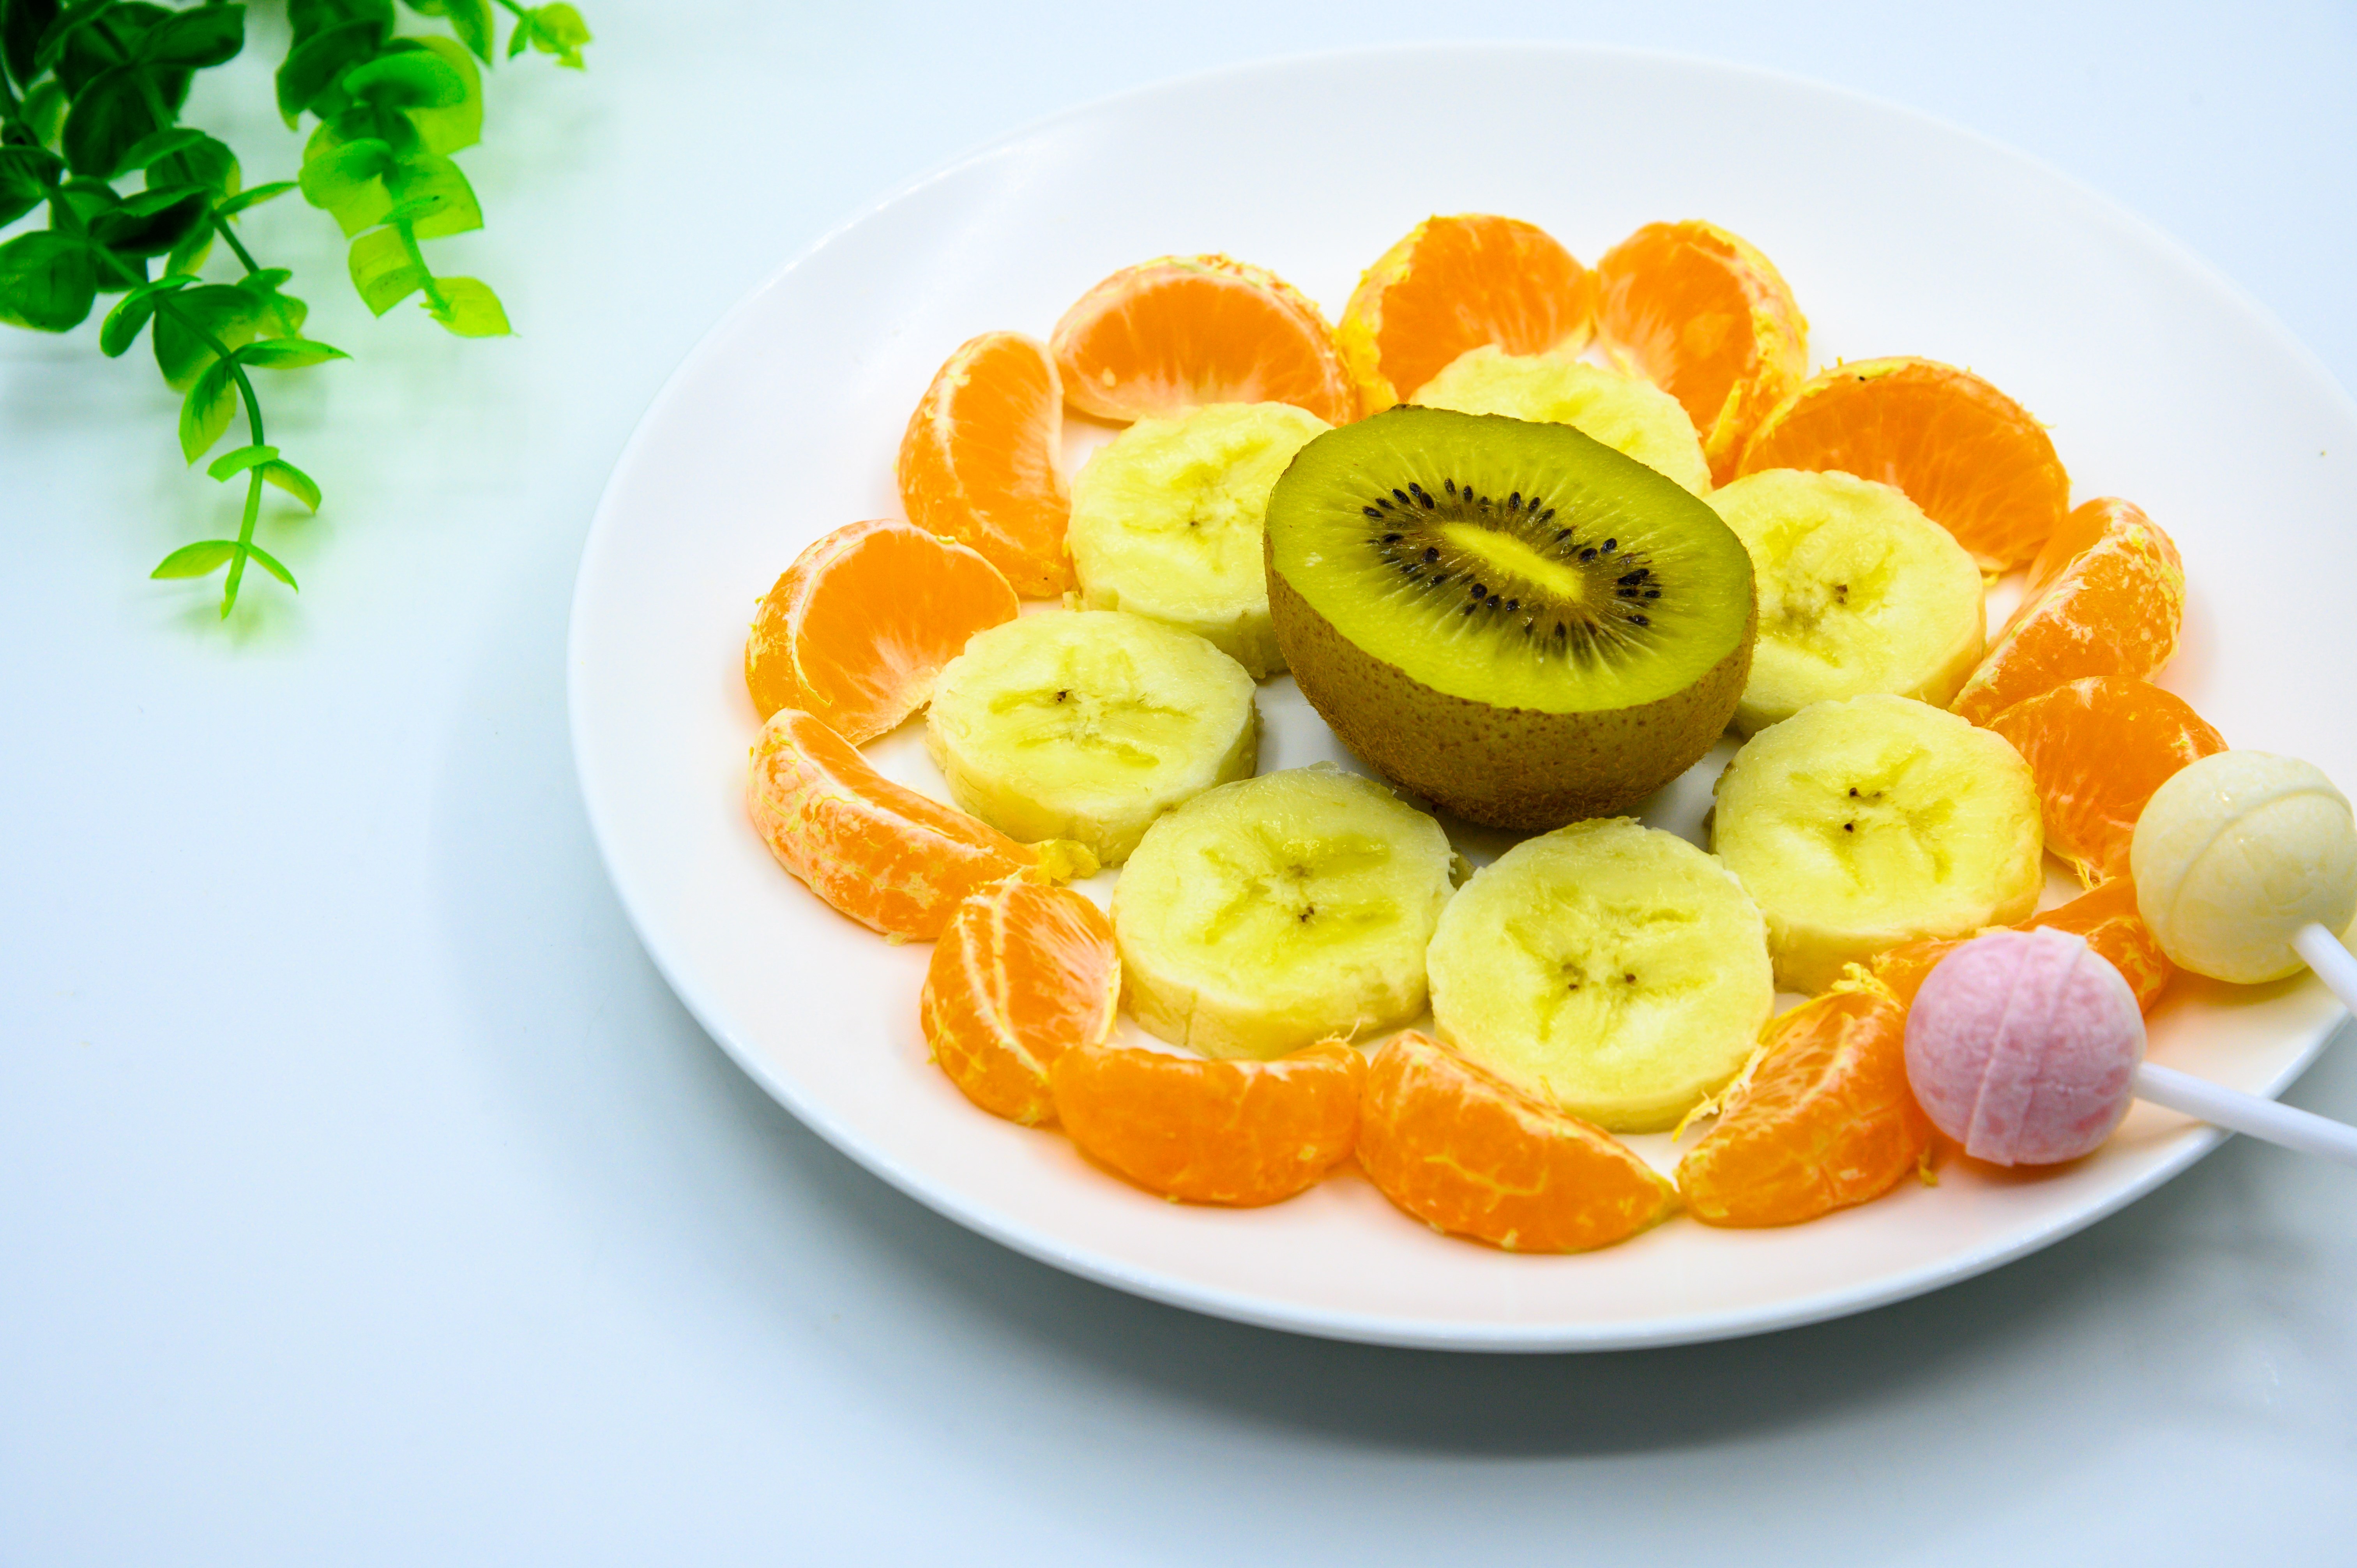 水果拚盘 拚盘 水果 橙子 香蕉 桔子 猕猴桃 樱桃 食品 盘子 白色瓷盘